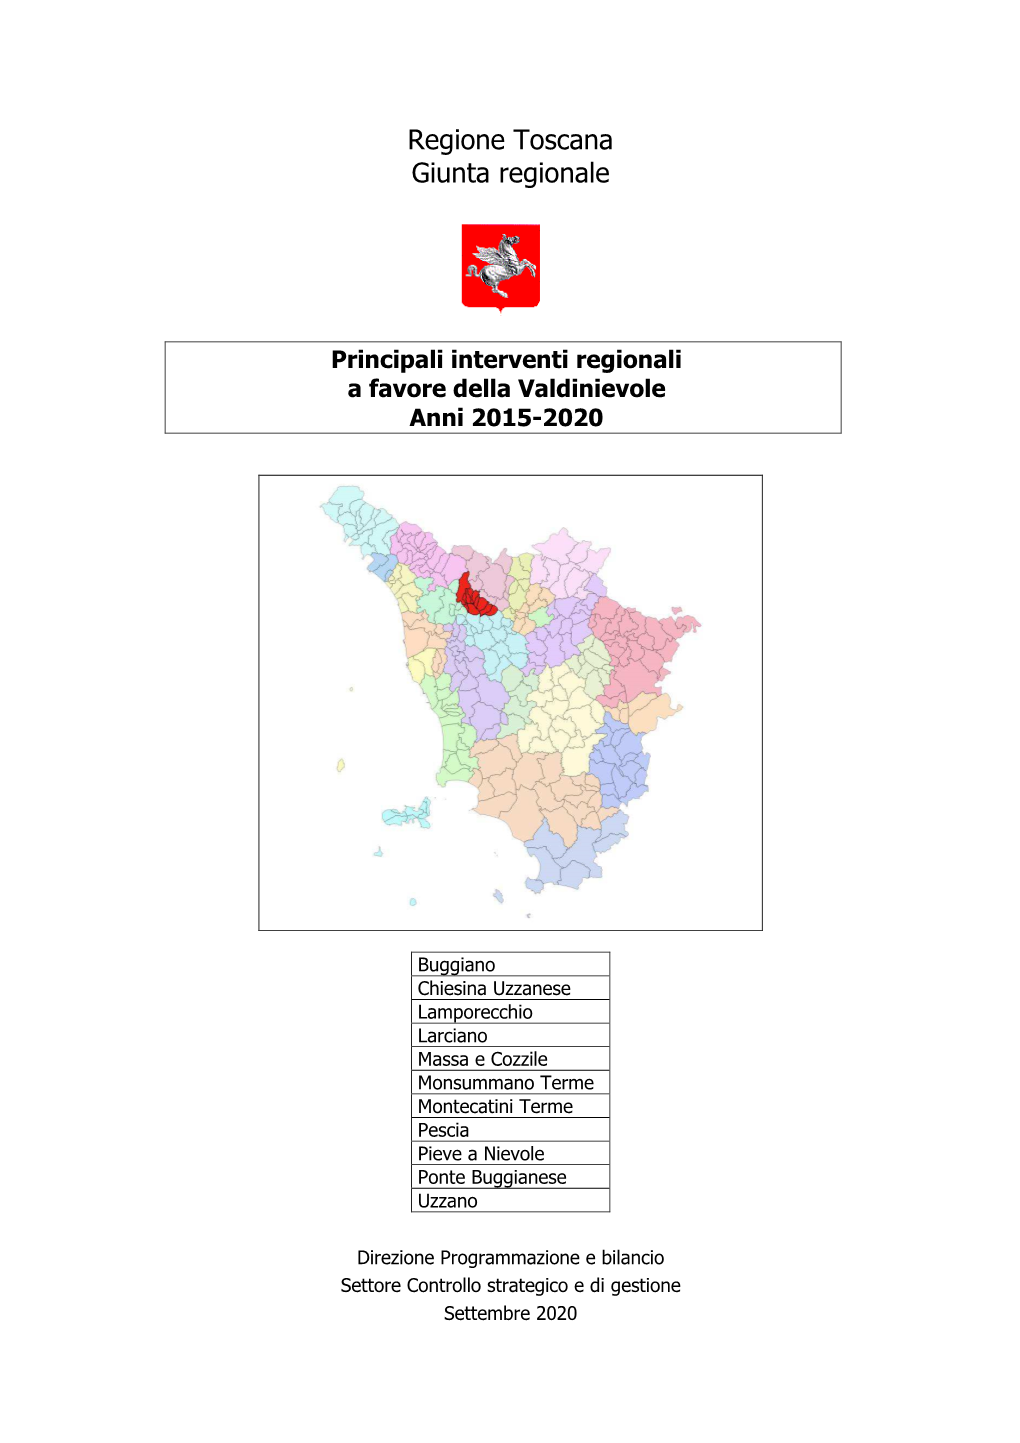 Principali Interventi Regionali a Favore Della Valdinievole Anni 2015-2020